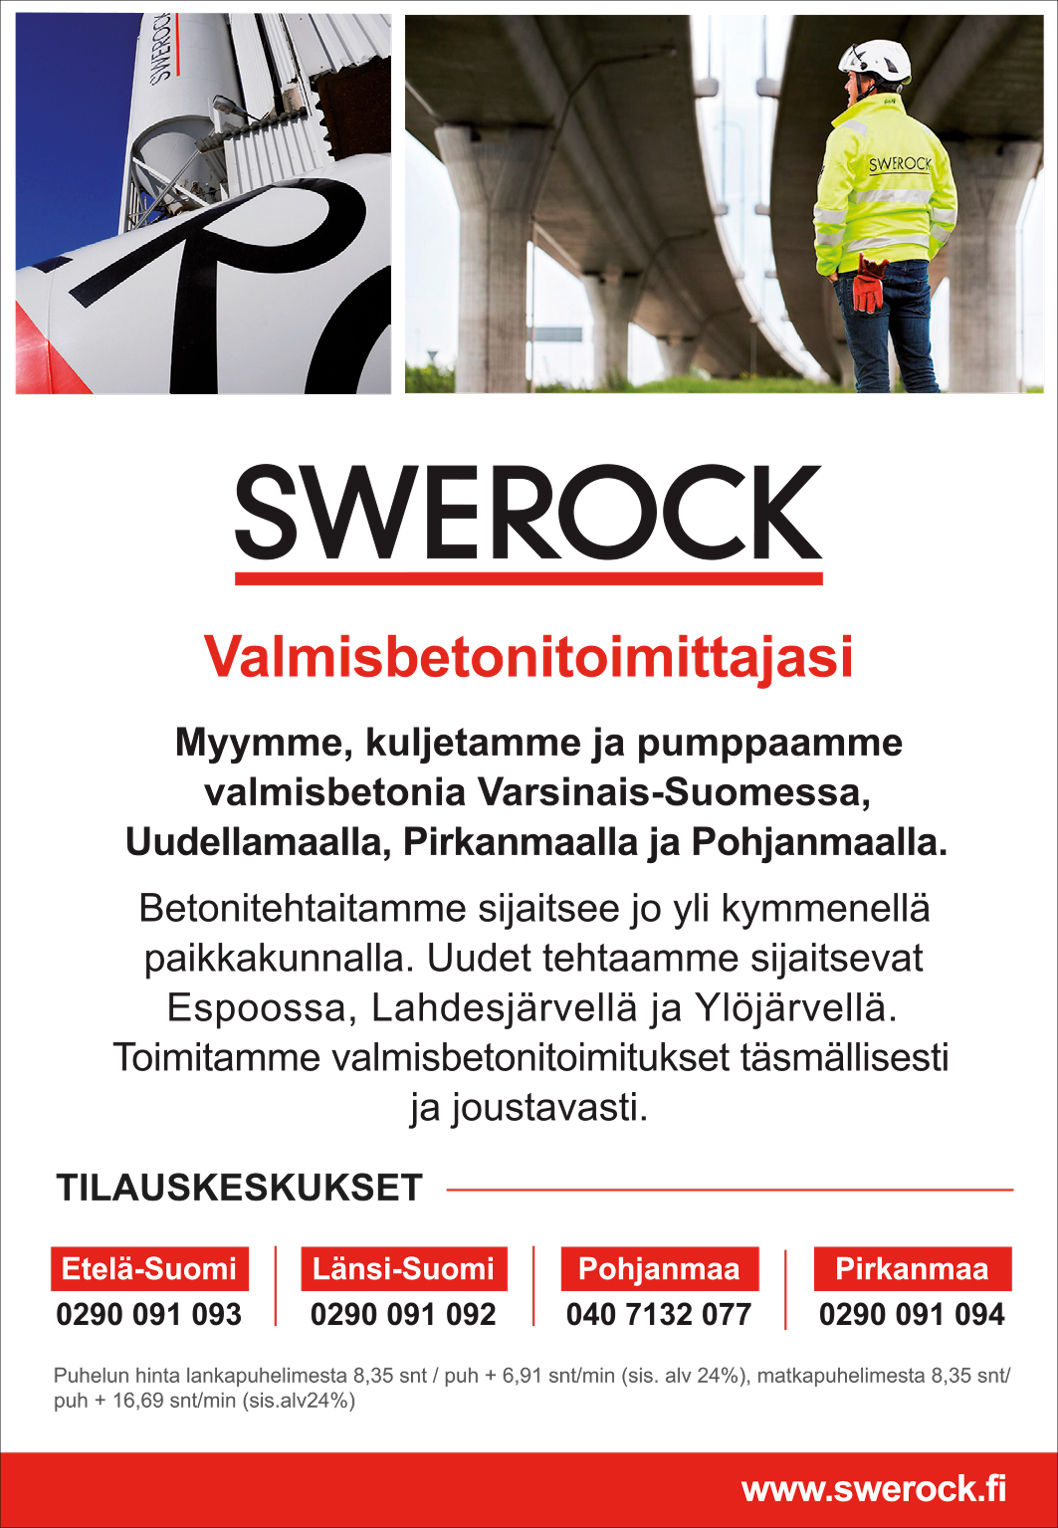 Swerock